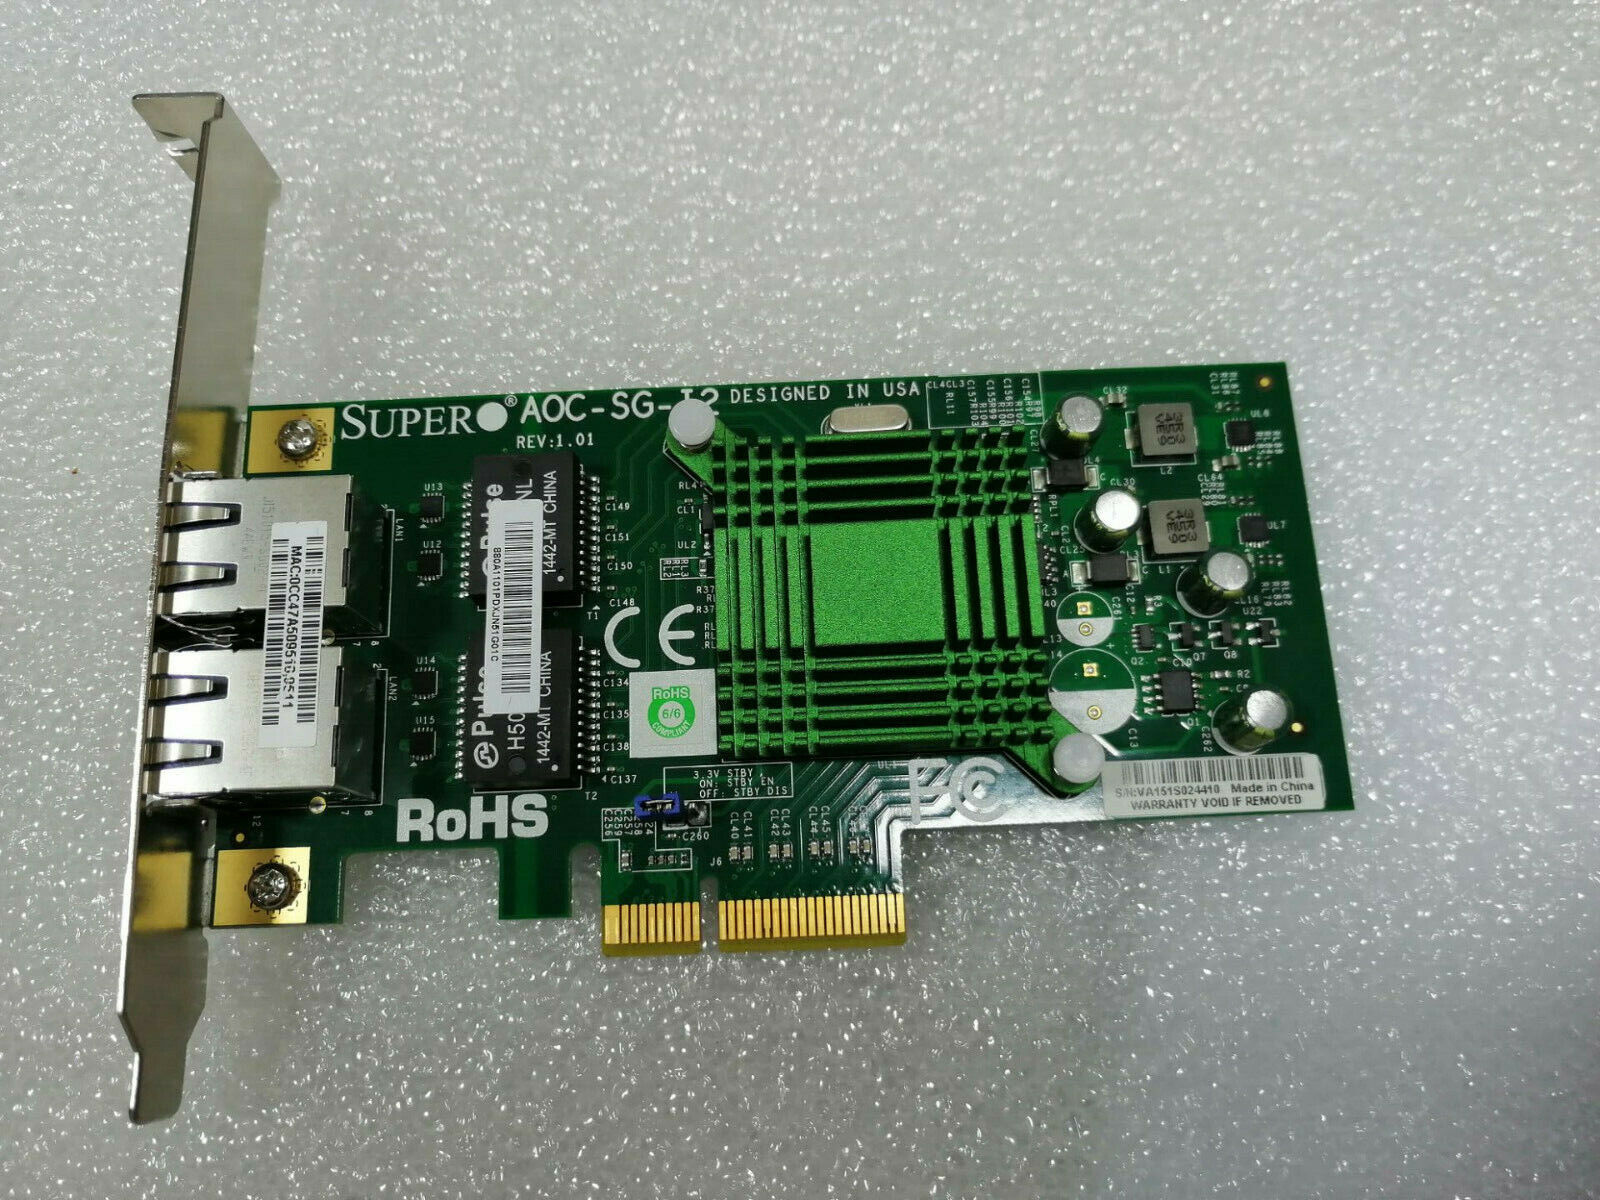 SuperMicro AOC-SG-I2 Dual Port Gigabit PCI-E Low Profile Ethernet Card